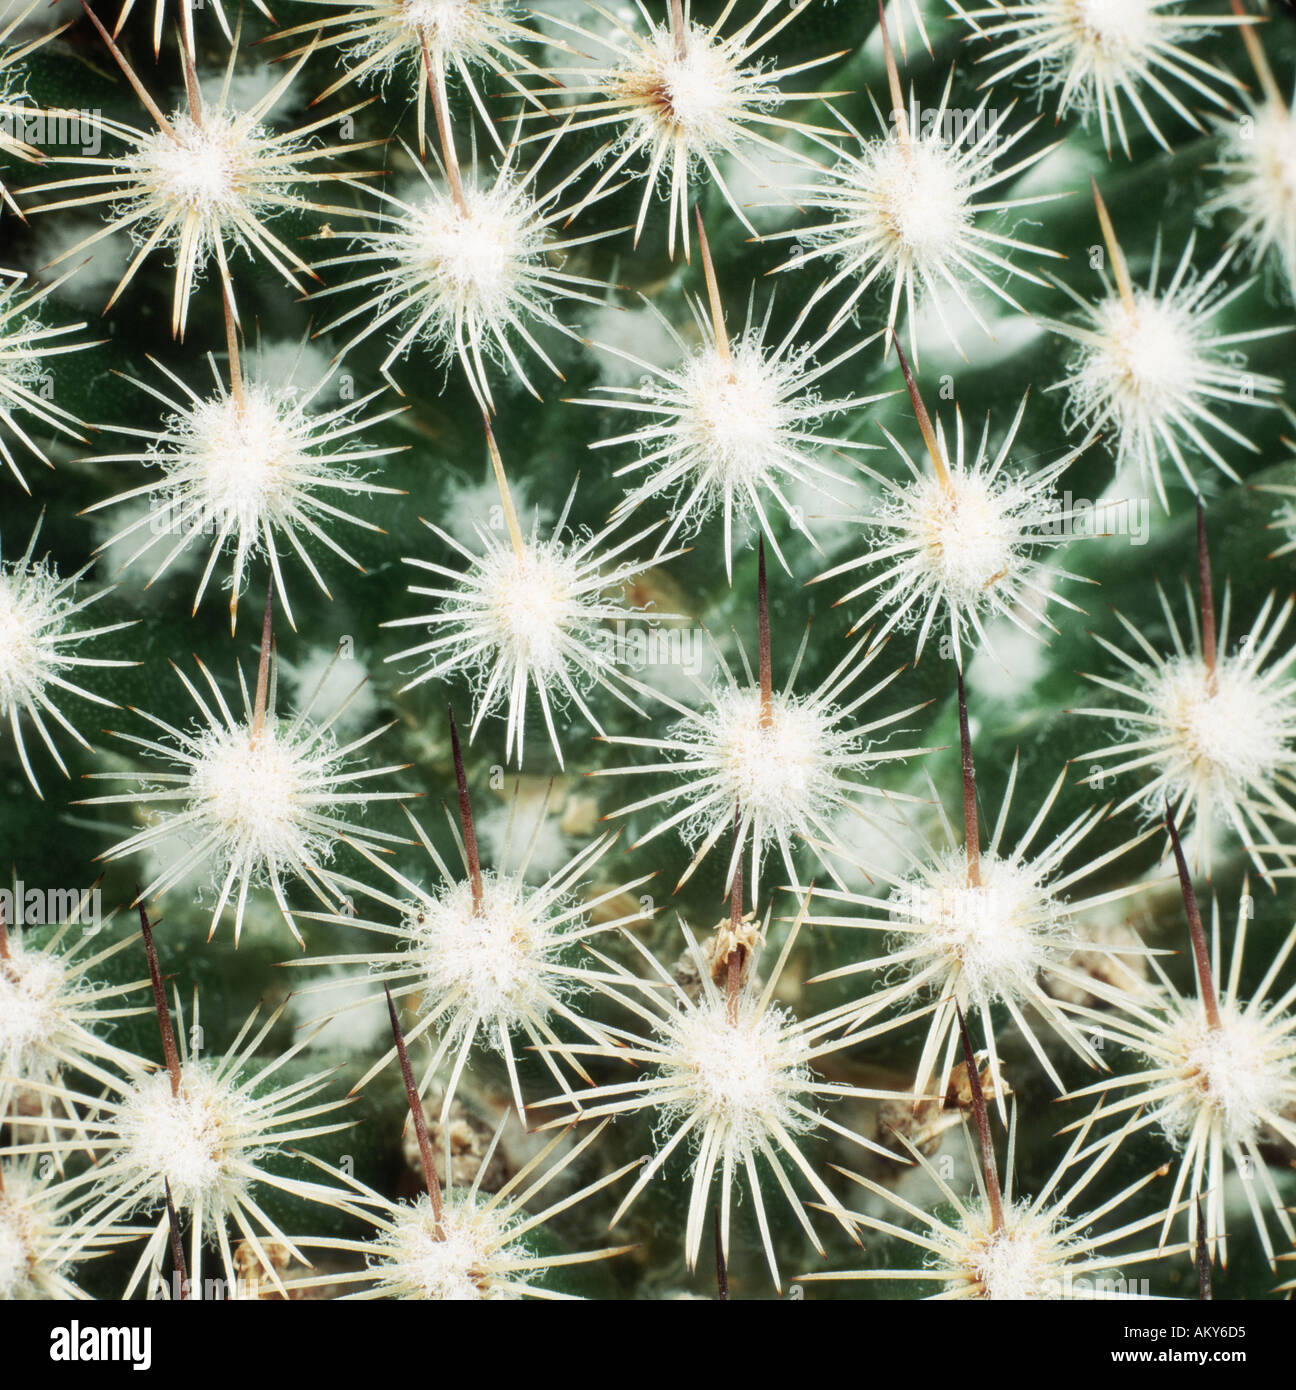 Nahaufnahme von regelmäßigen Gruppen Blatt Stacheln in Mustern auf eine dekorative Kaktus Pflanze Stockfoto